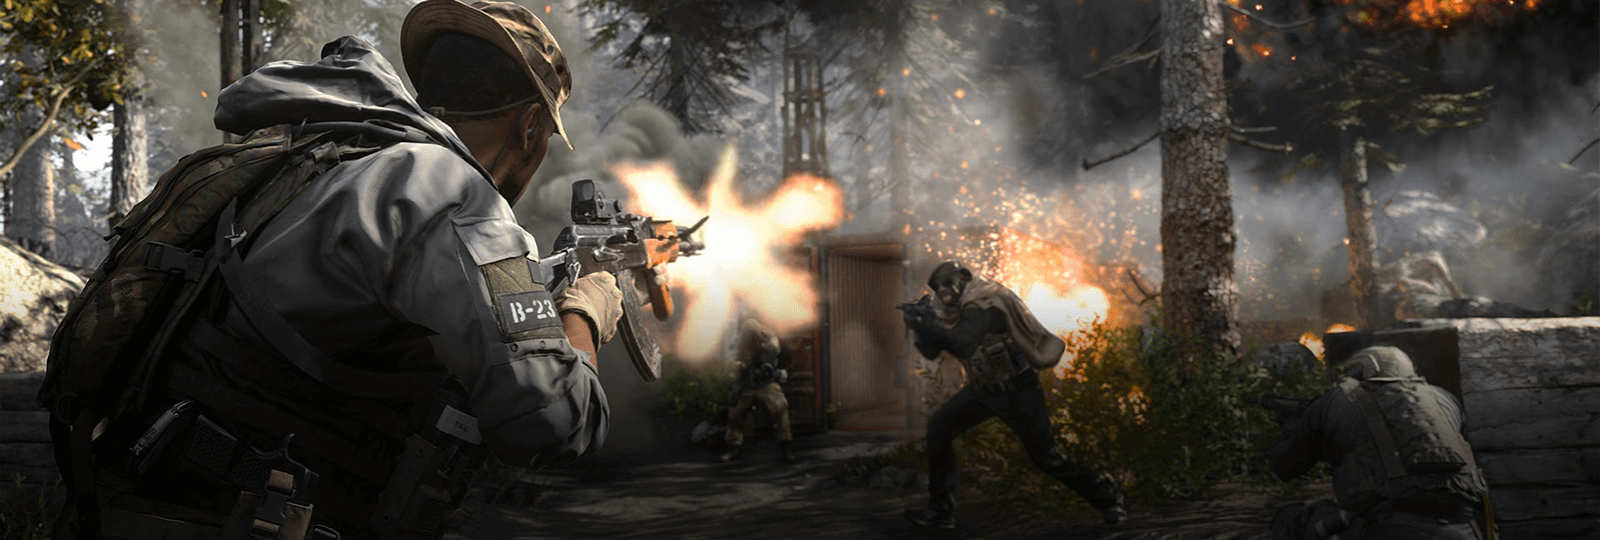 CoD: Modern Warfare Multiplayer